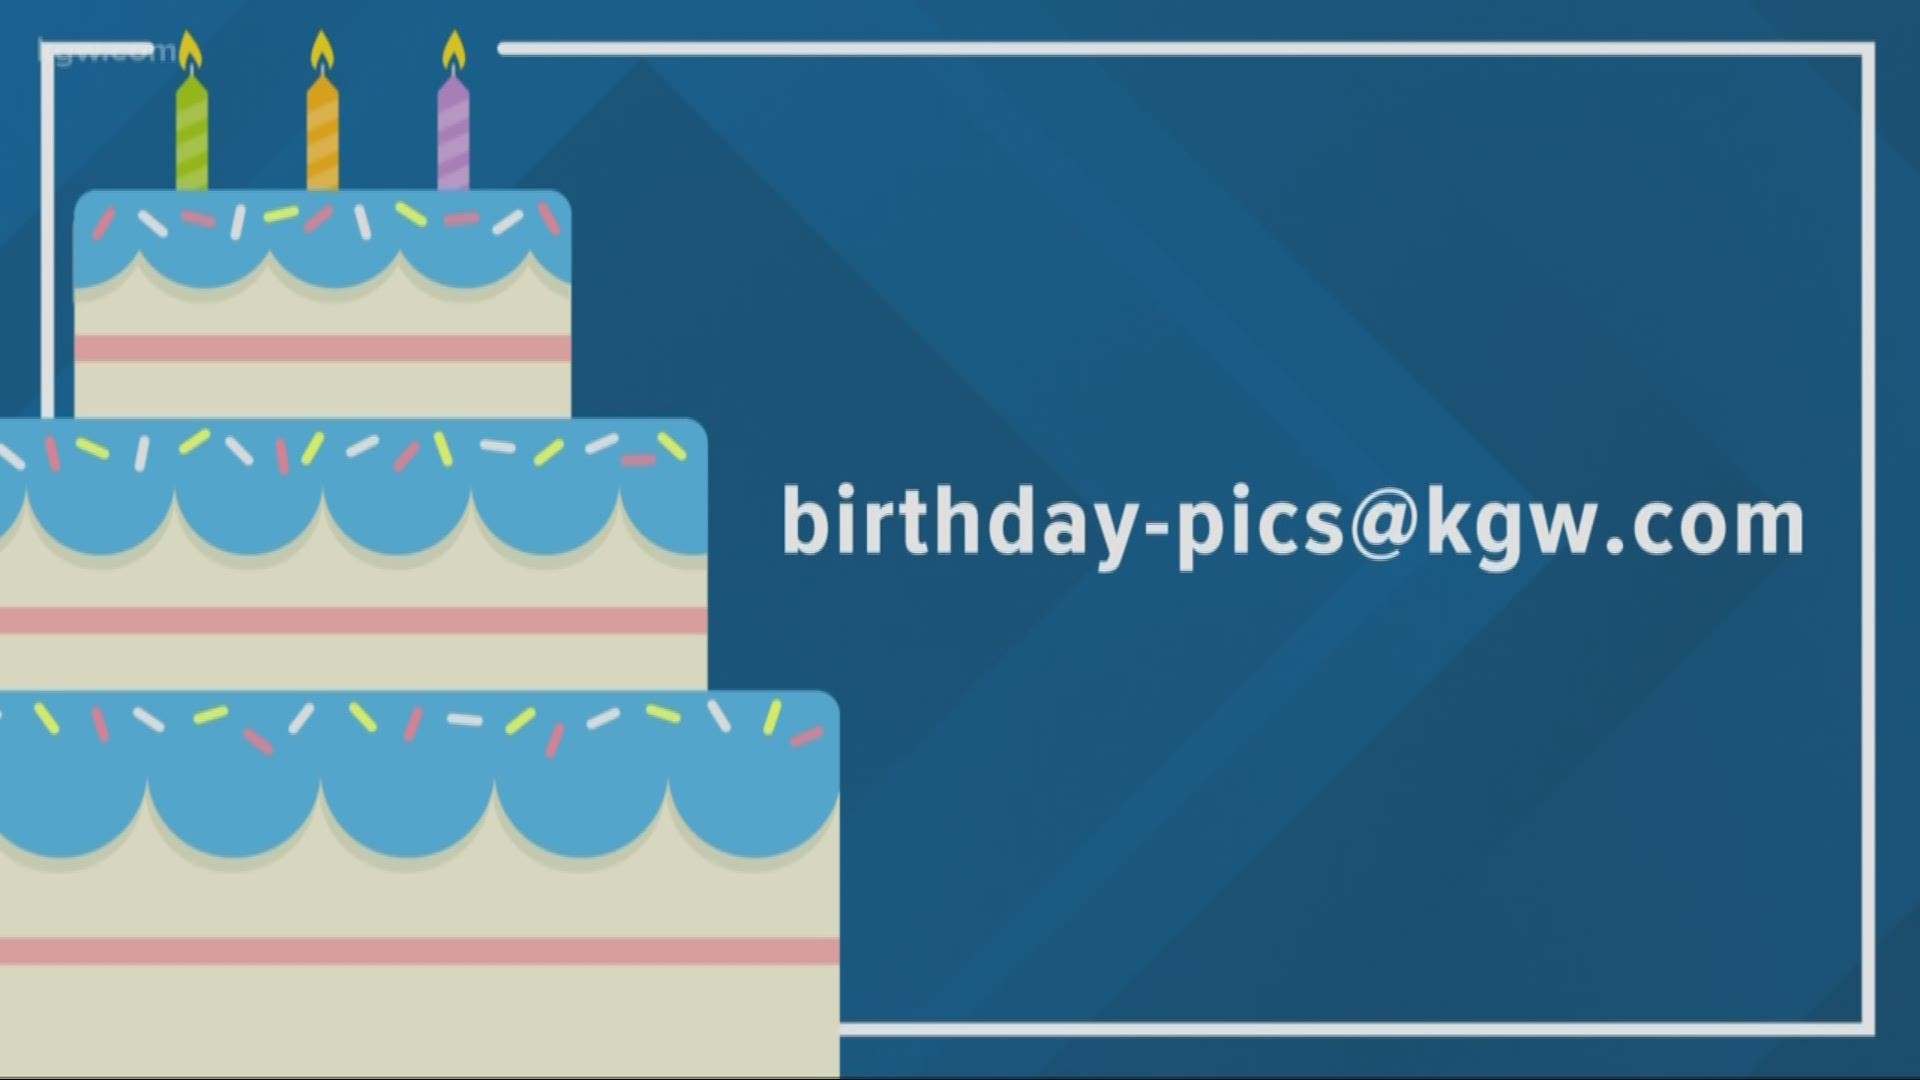 KGW viewer birthdays: 10-4-19